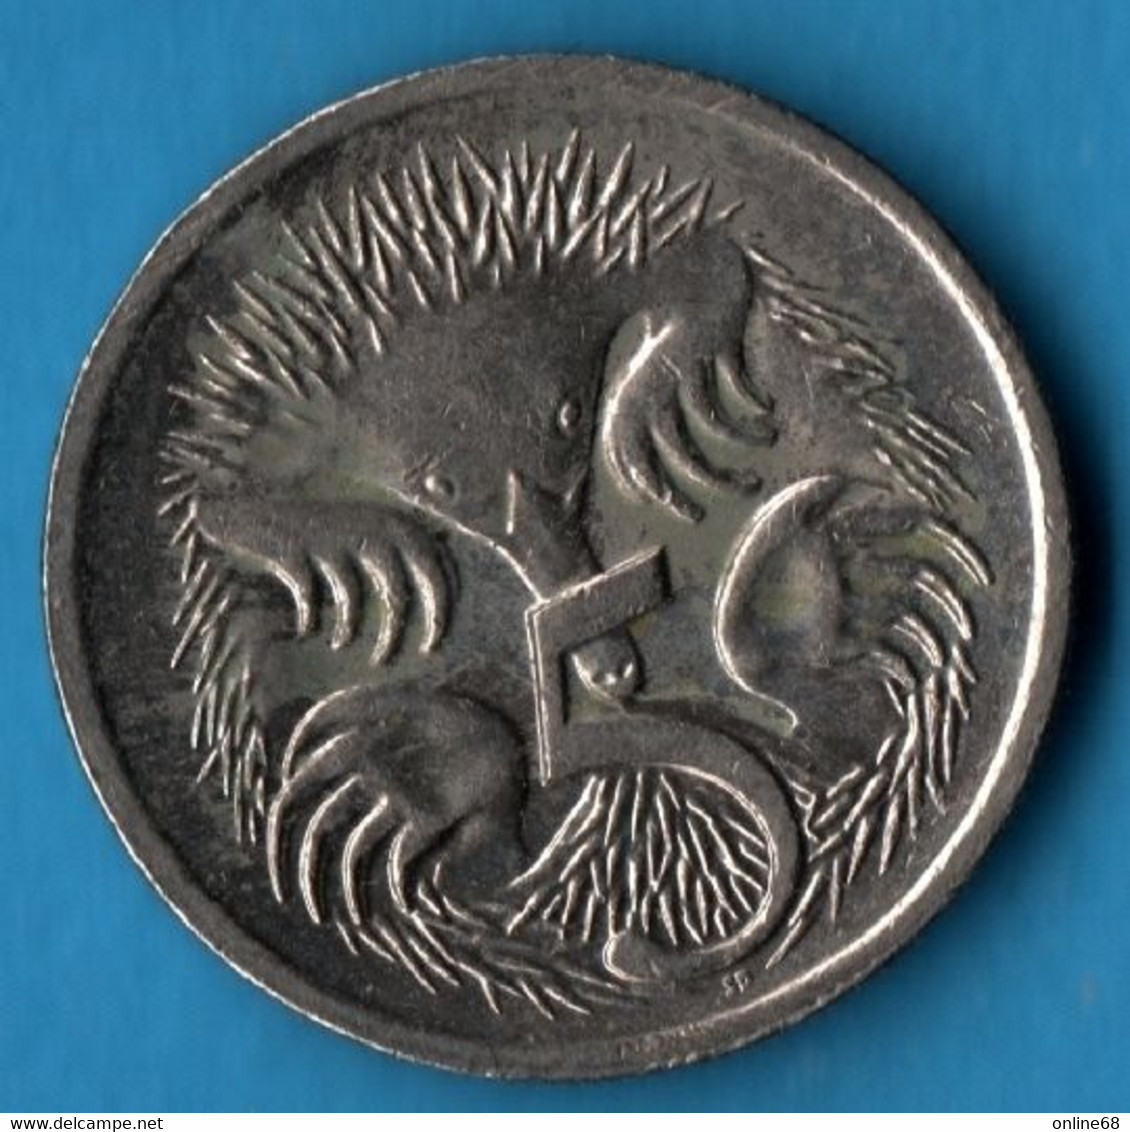 AUSTRALIA 5 CENTS 2006 KM# 401 Echidna  QEII - 5 Cents